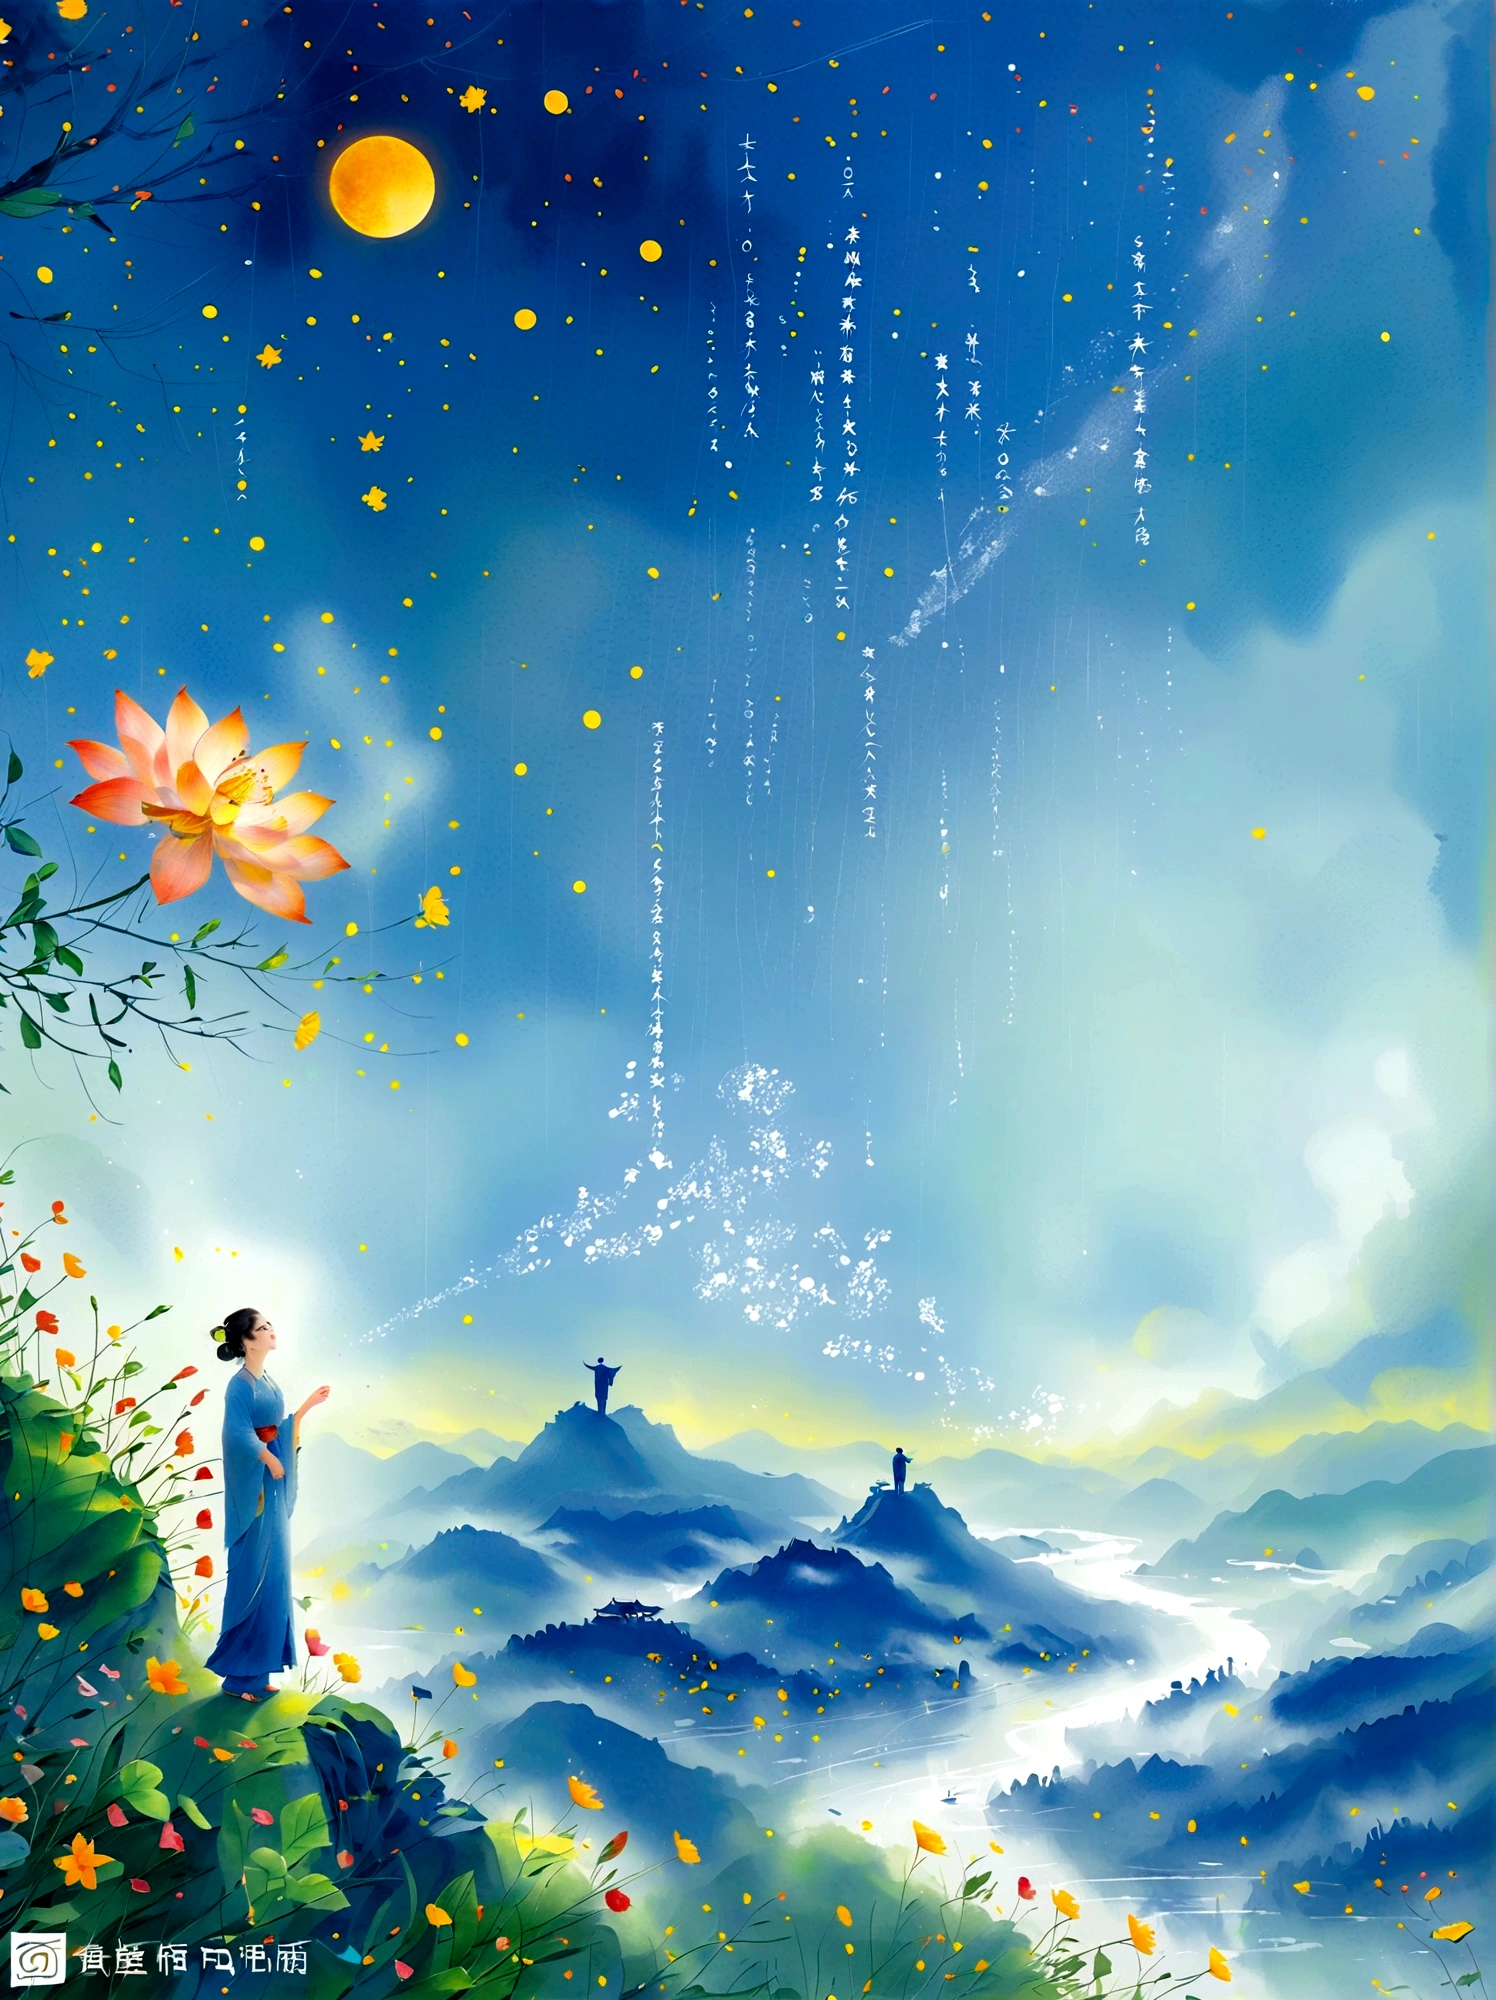 Cai GuoRUNs Illustrationsstil, 1 Mädchen, Eine Frau in einem langen Rock steht auf einer Klippe und blickt in den Sternenhimmel, Göttin des Weltraums, Göttin der Milchstraße, Göttin des Himmels, Astral ätherisch, Traum, Wunderschöner himmlischer Zauberer, wunderschönes Fantasygemälde, wunderschöne Fantasy-Kunst, Ätherische Fantasie, Very wunderschöne Fantasy-Kunst, digitale Kunst Fantasie, bezaubernd und überirdisch, Fantasie Schönheit, Die wunderschöne Kunst des Octane UHD 8K-Renderings, volumetrisches Licht, natürliches weiches Licht, (Ultra-empfindlich:1.2, Konzentrationsverlust:1.2, Bunt, Filmbeleuchtung, Raytracing), Super rich, Extrem detailliert, 1cgrssh1, Chiaroscuro, Meisterwerk, 8k